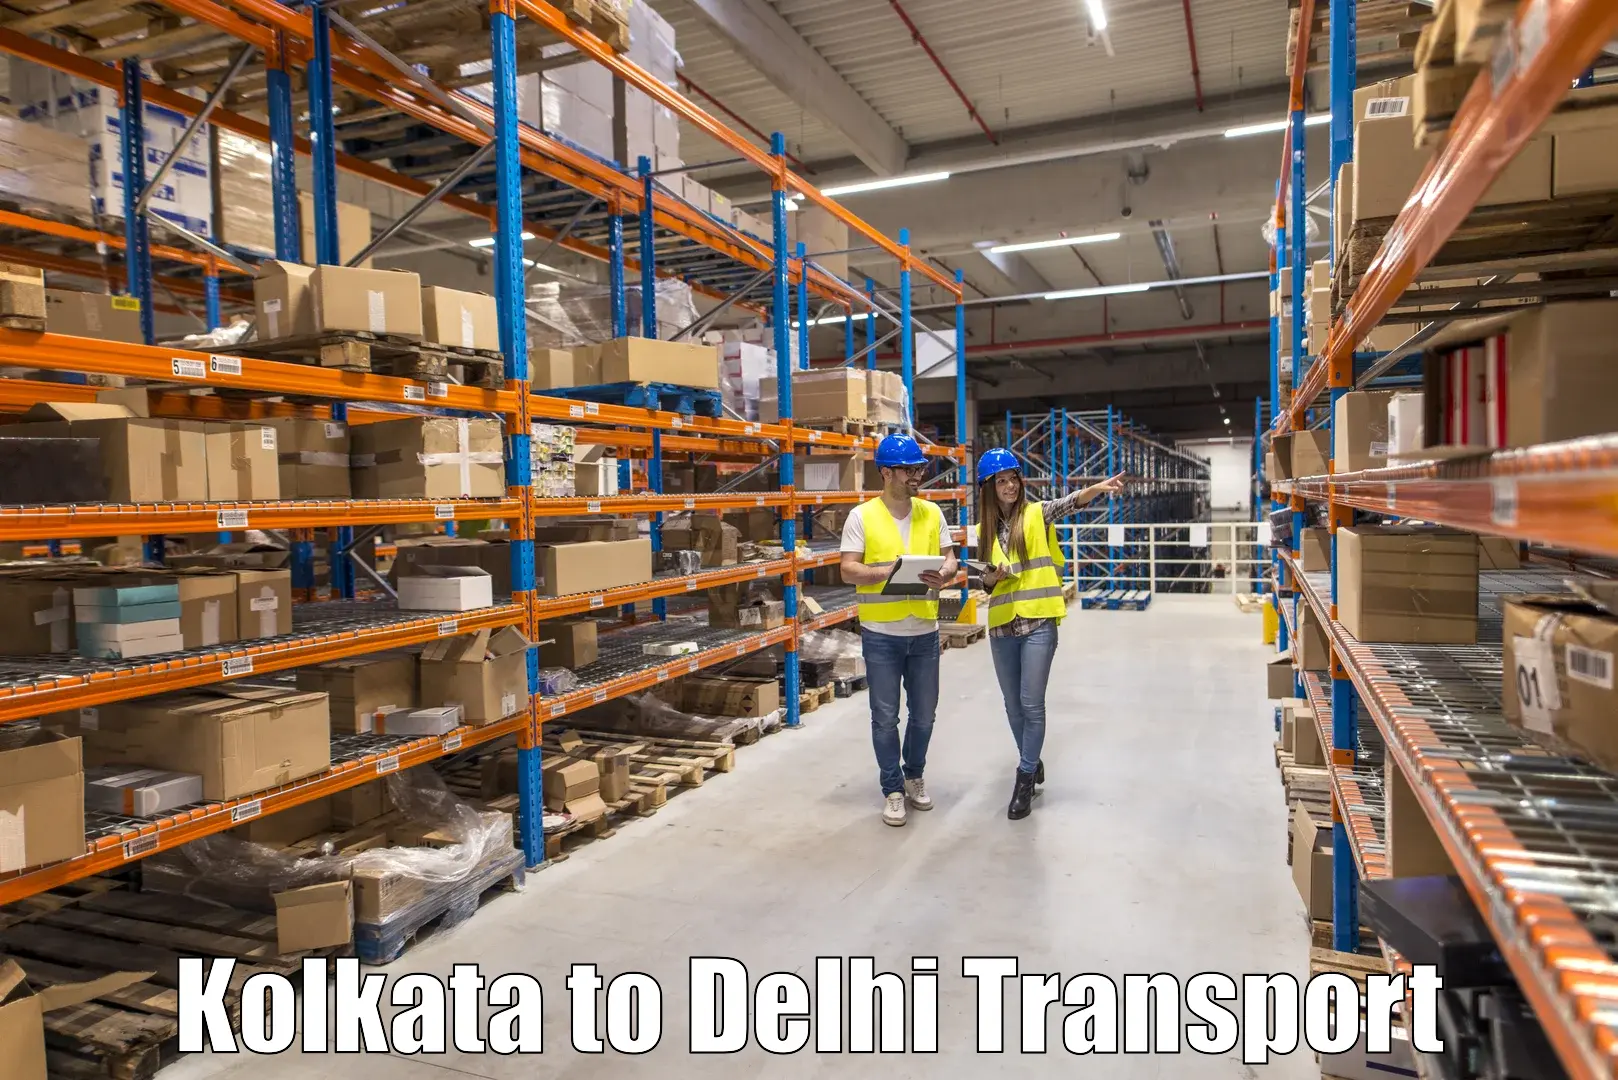 Bike shipping service Kolkata to University of Delhi